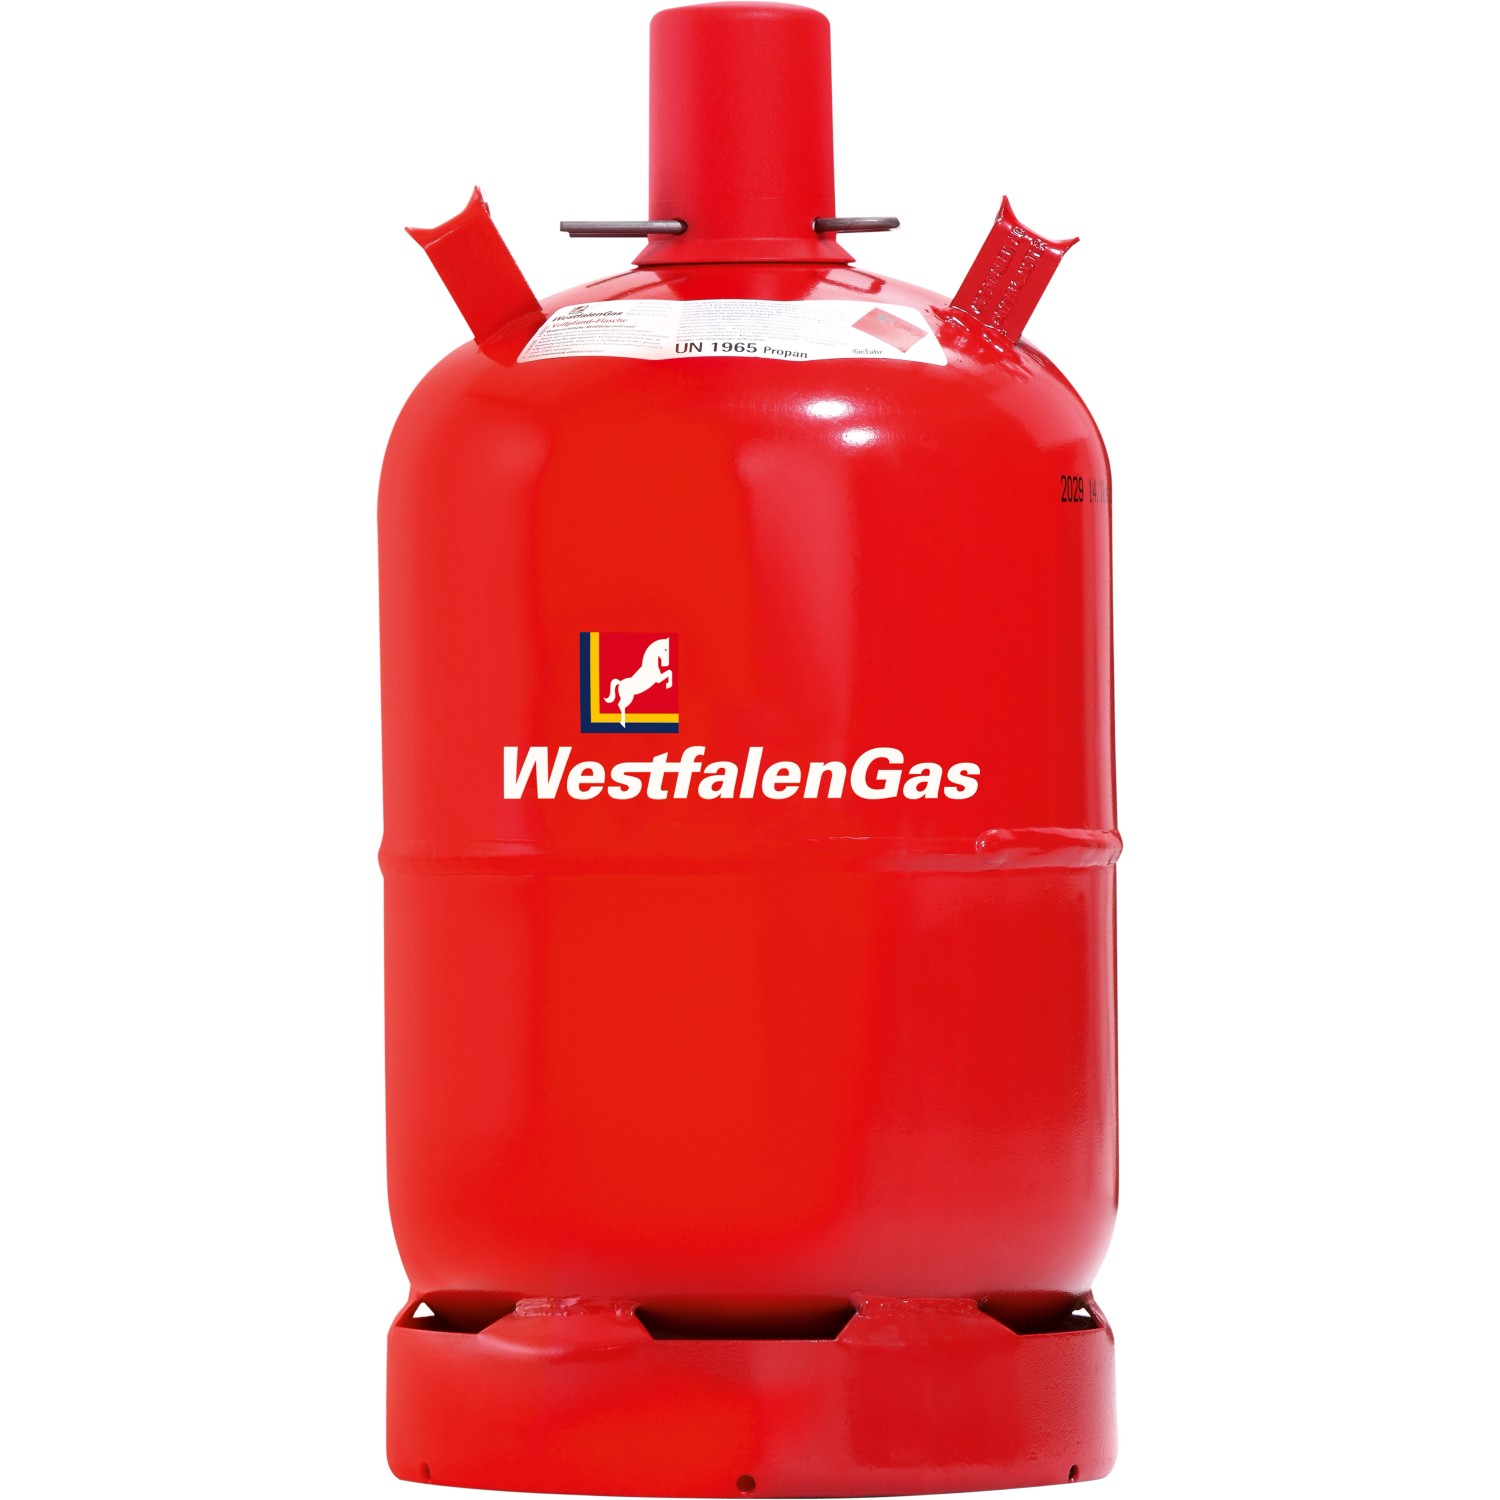 Westfalengas Propan Füllung 11 kg Pfandflasche (nur Füllung, ohne Flasche)  kaufen bei OBI